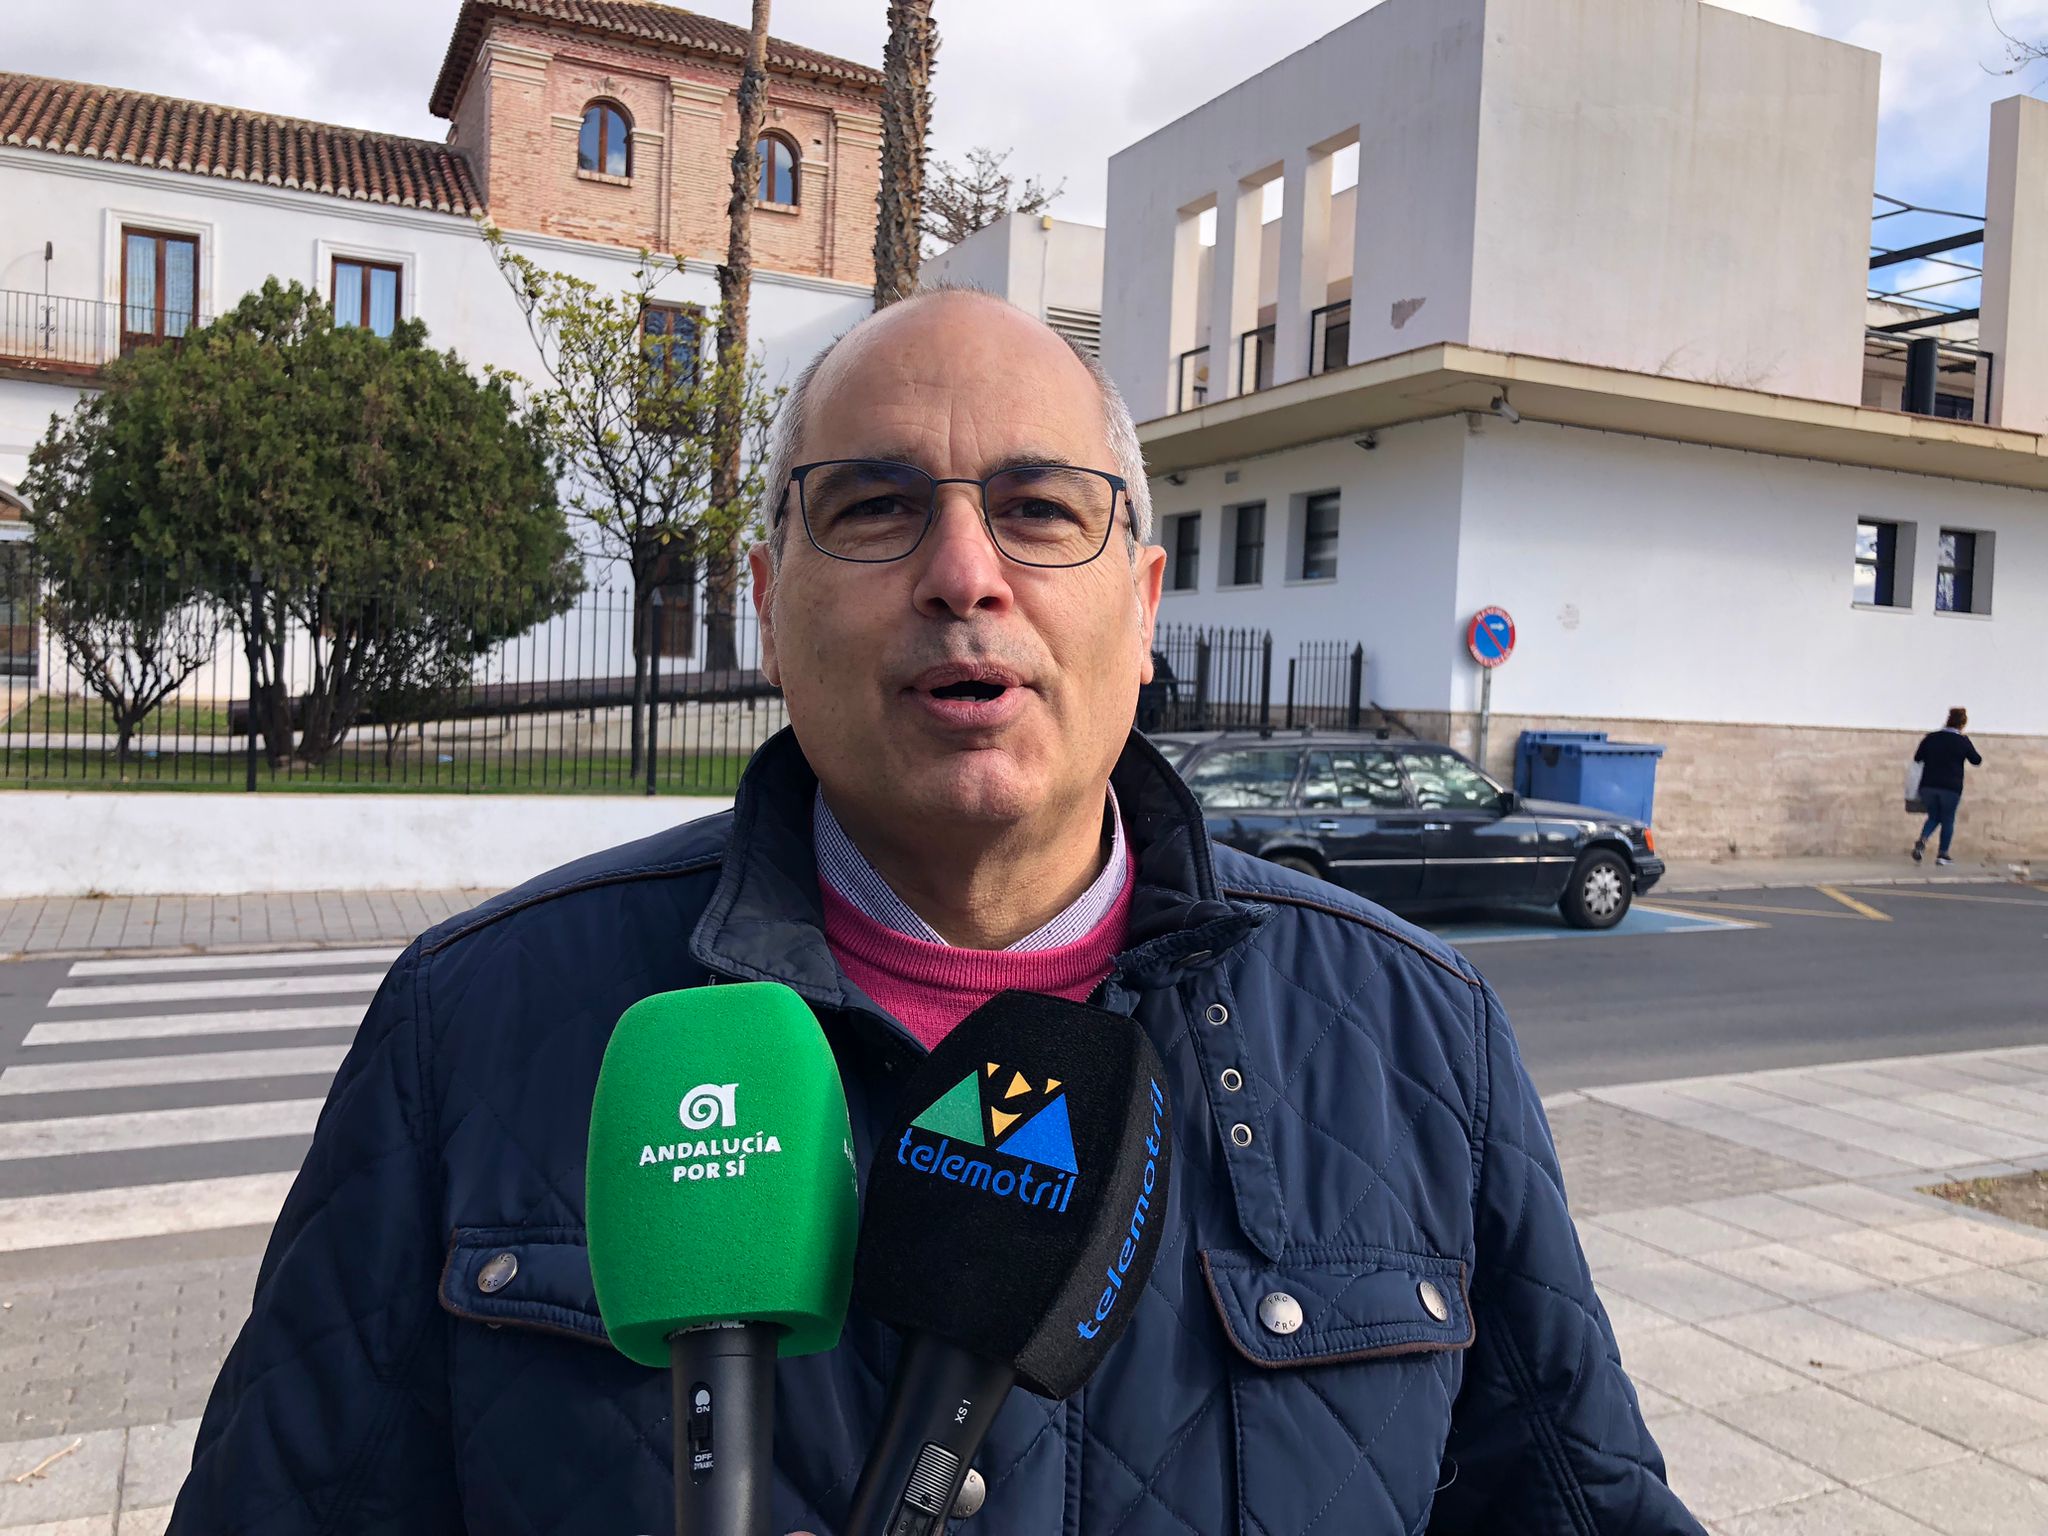 Andalucía Por Sí denuncia el colapso en la atención primaria con listas de espera de mes y medio para un análisis de sangre